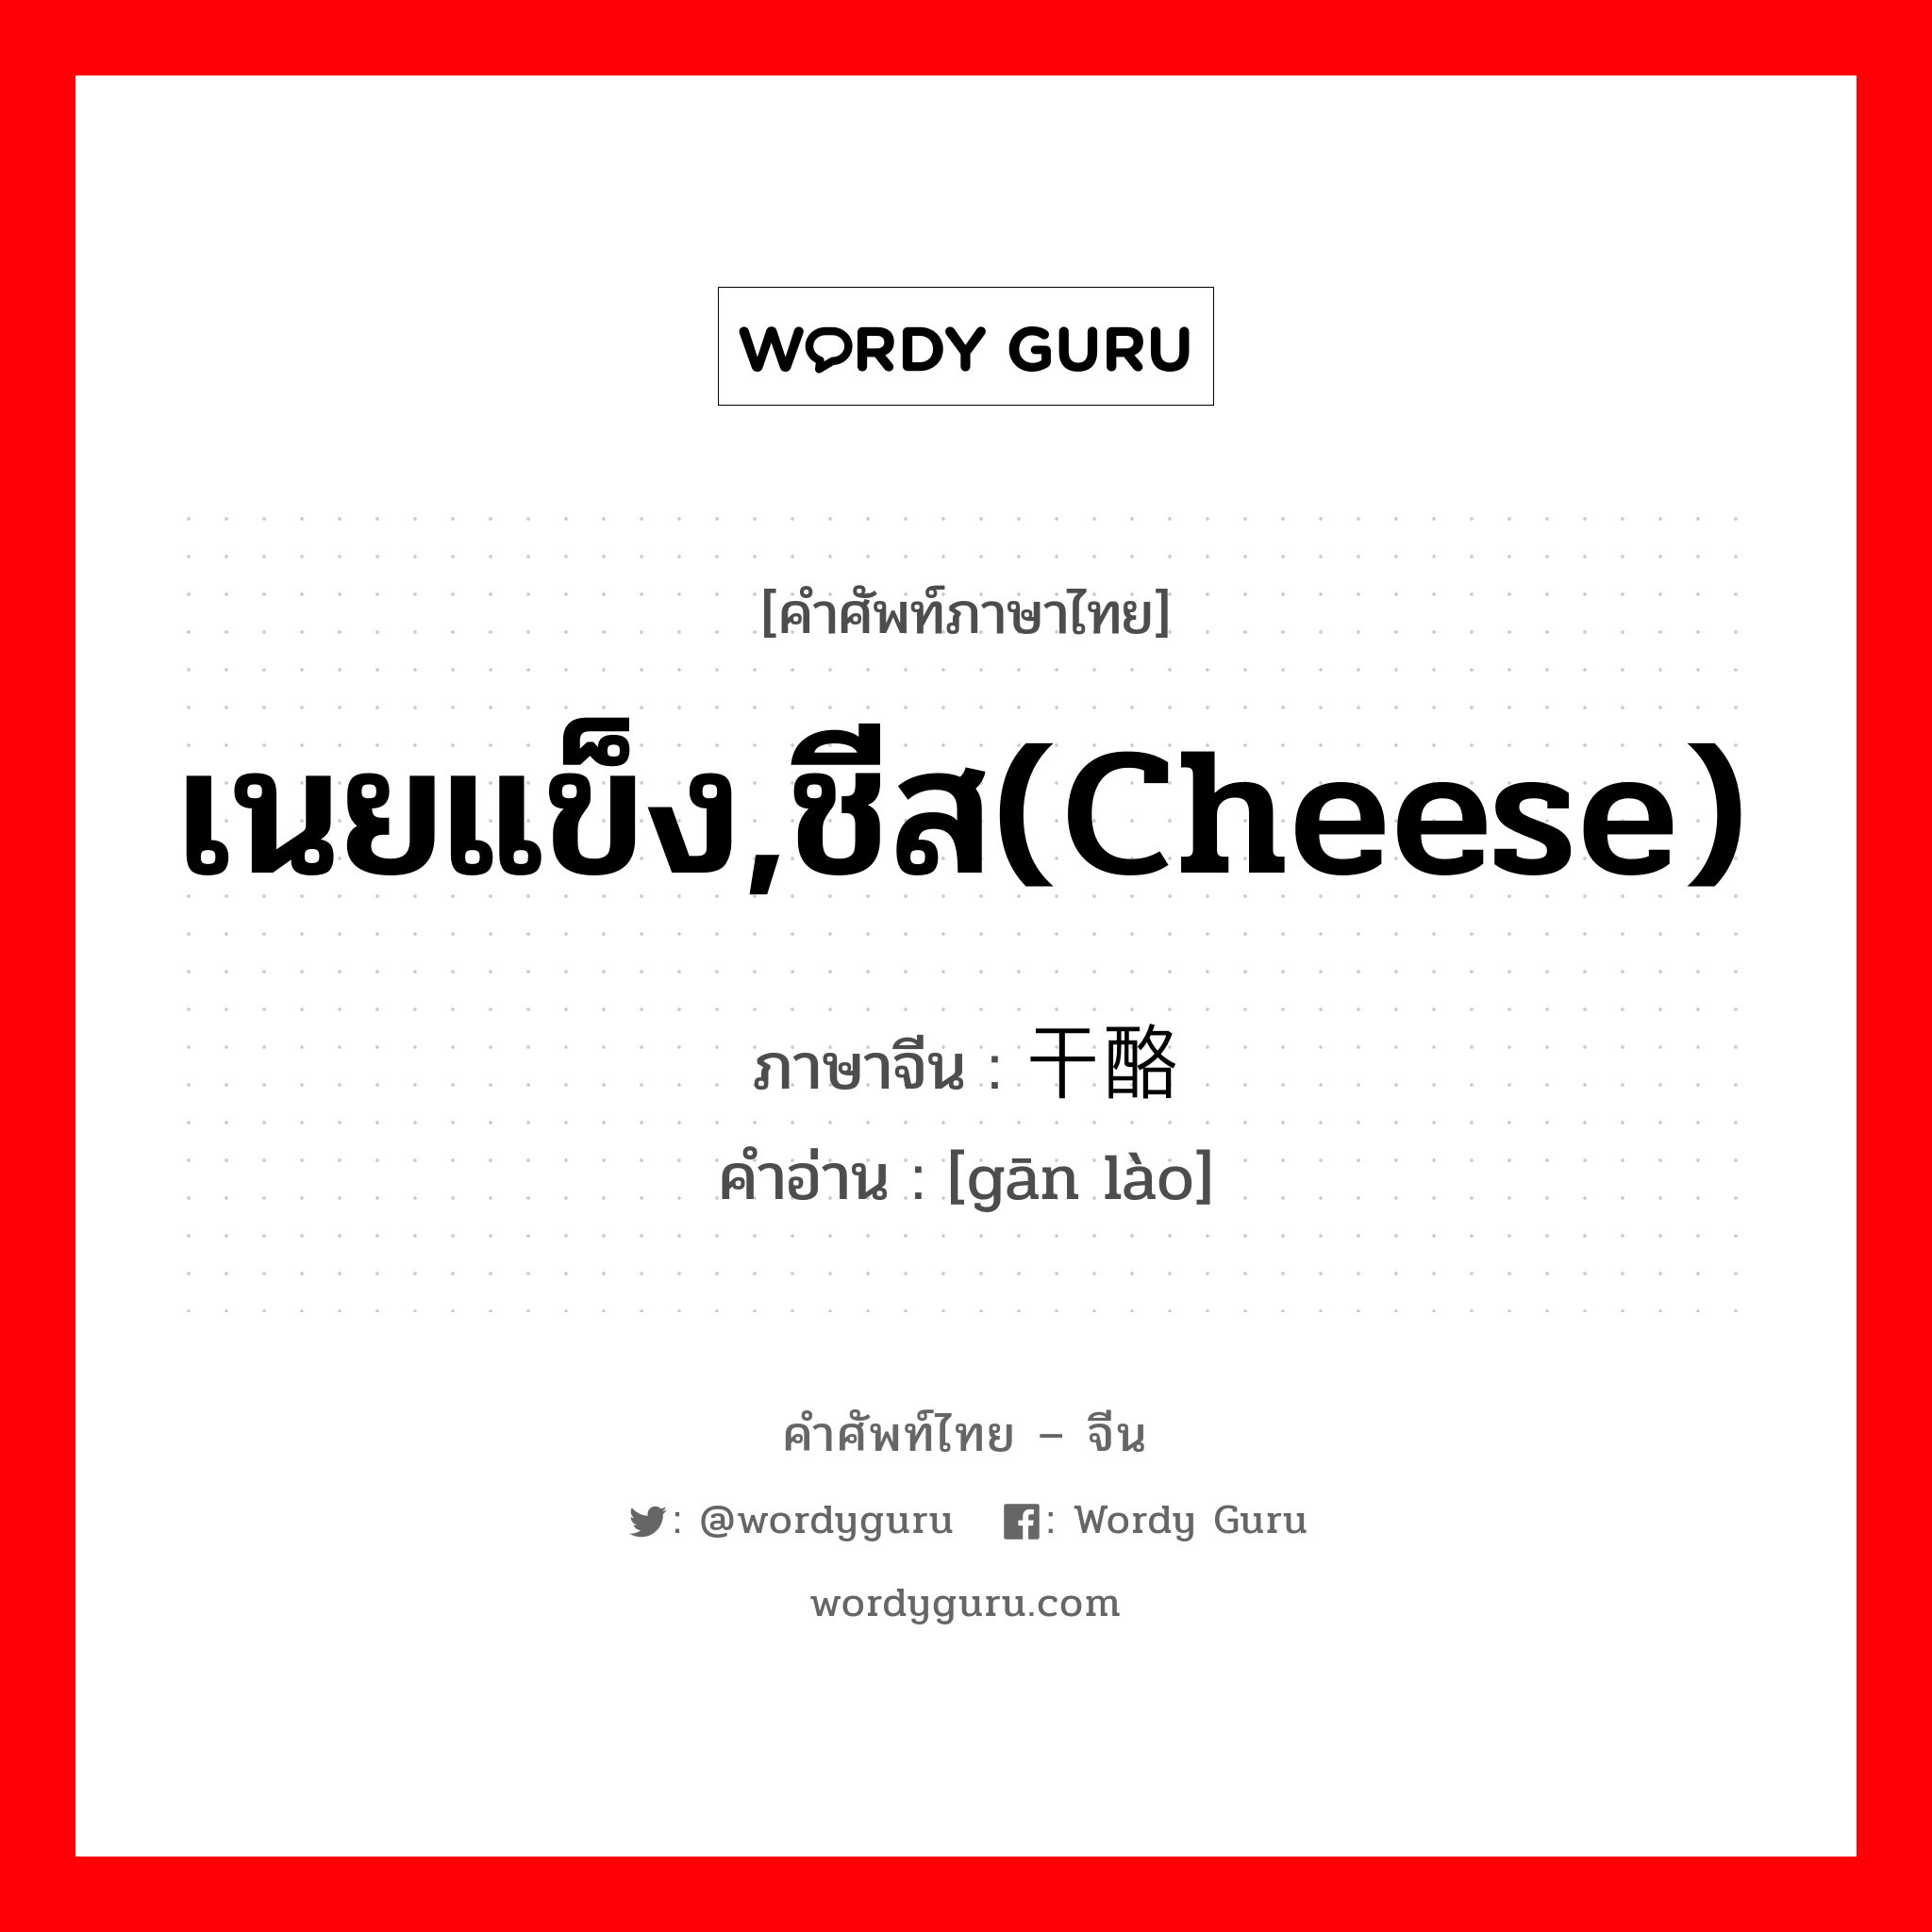 เนยแข็ง,ชีส(cheese) ภาษาจีนคืออะไร, คำศัพท์ภาษาไทย - จีน เนยแข็ง,ชีส(cheese) ภาษาจีน 干酪 คำอ่าน [gān lào]